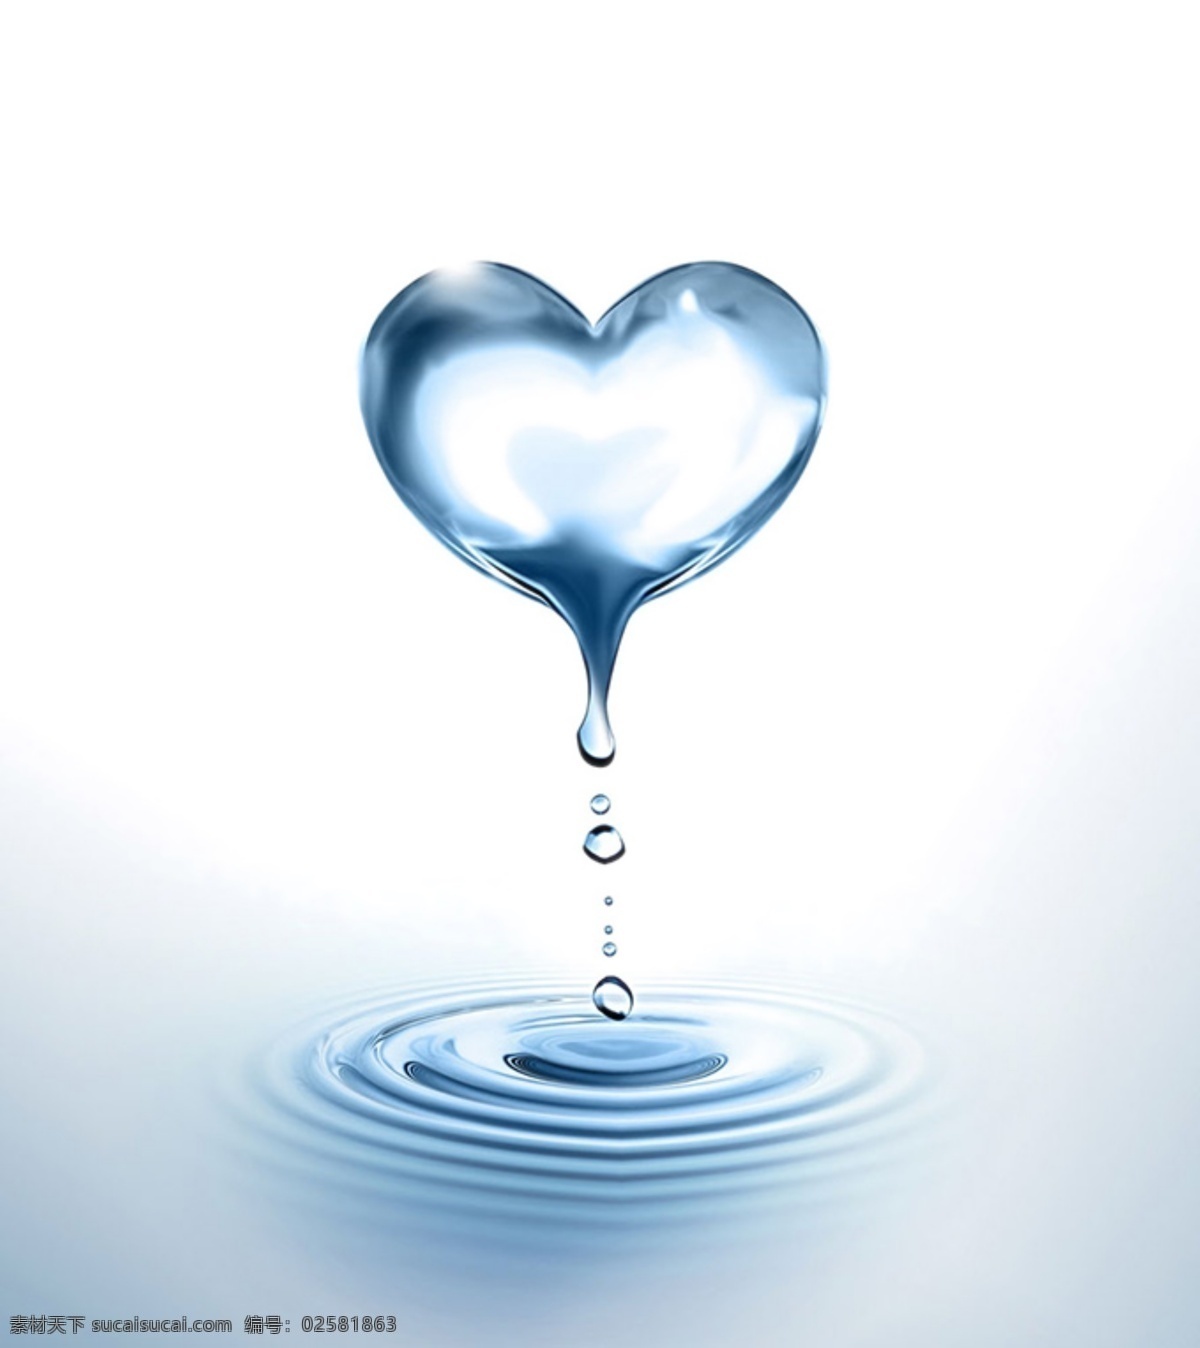 爱心水滴图片 爱心 水滴 水 水滴素材